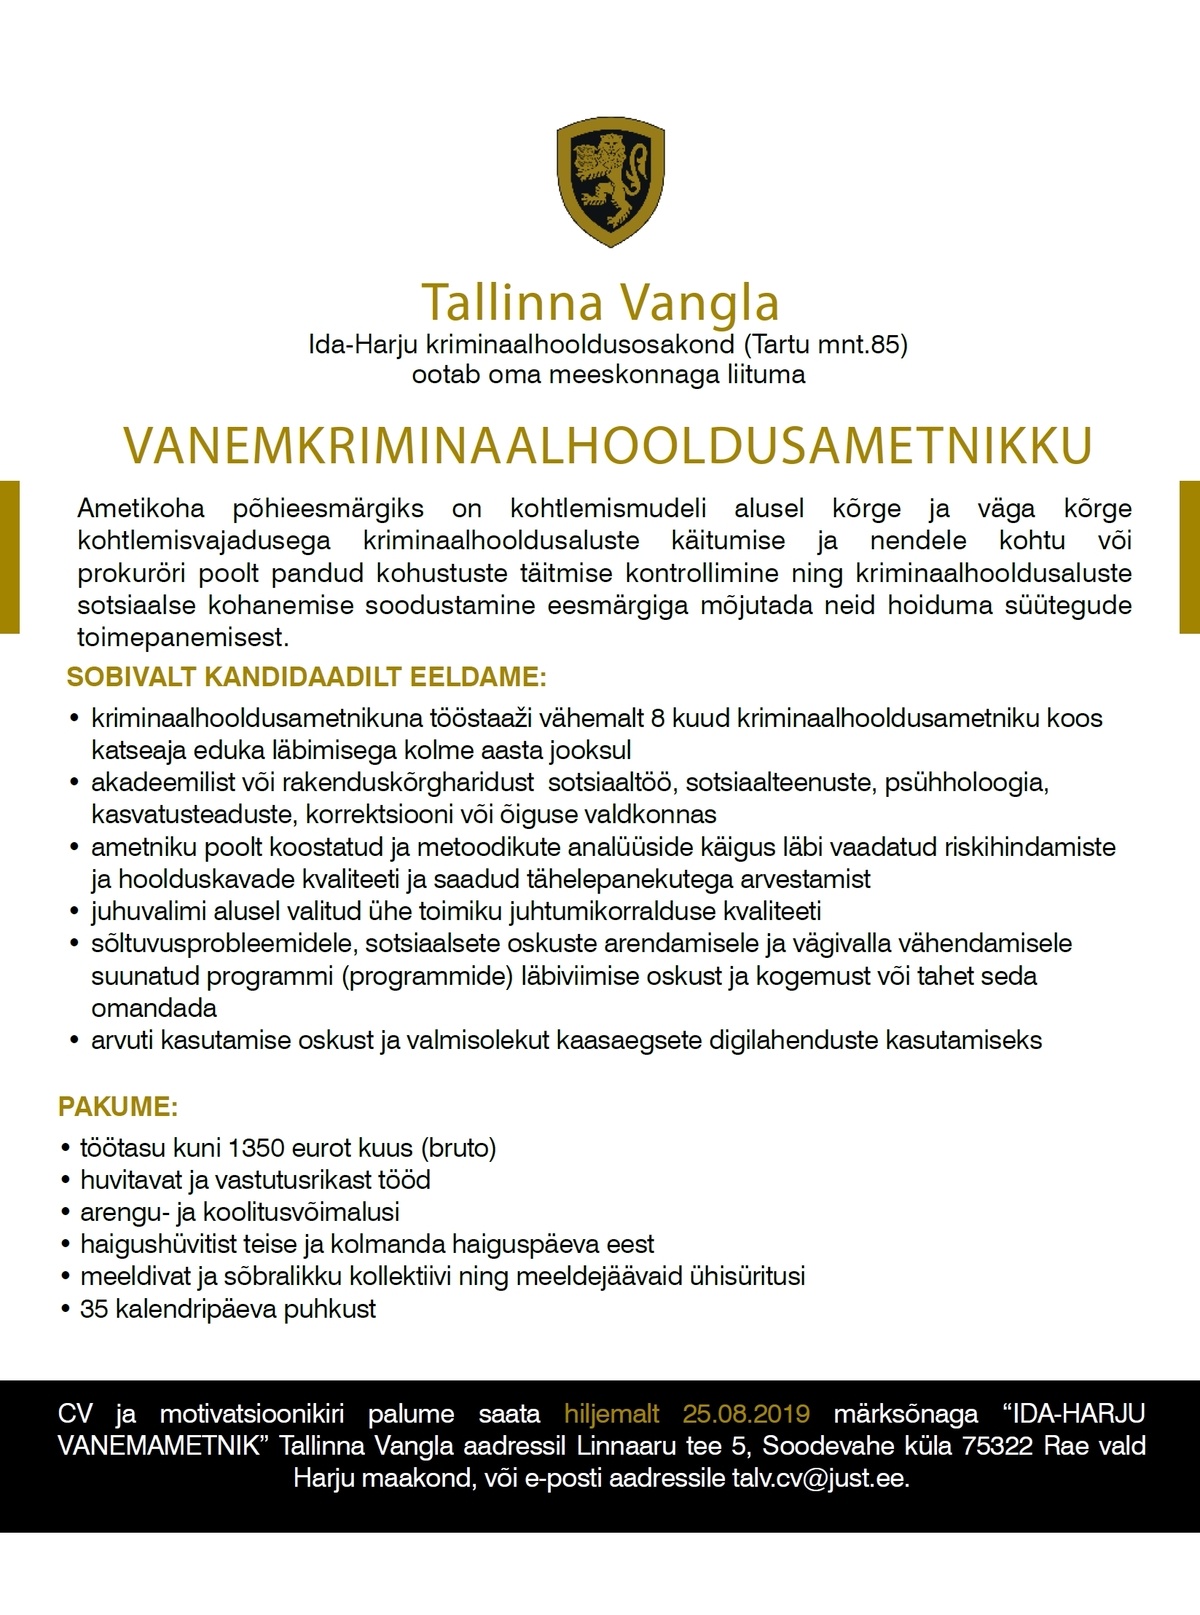 Tallinna Vangla Ida-Harju Vanemkriminaalhooldusametnik